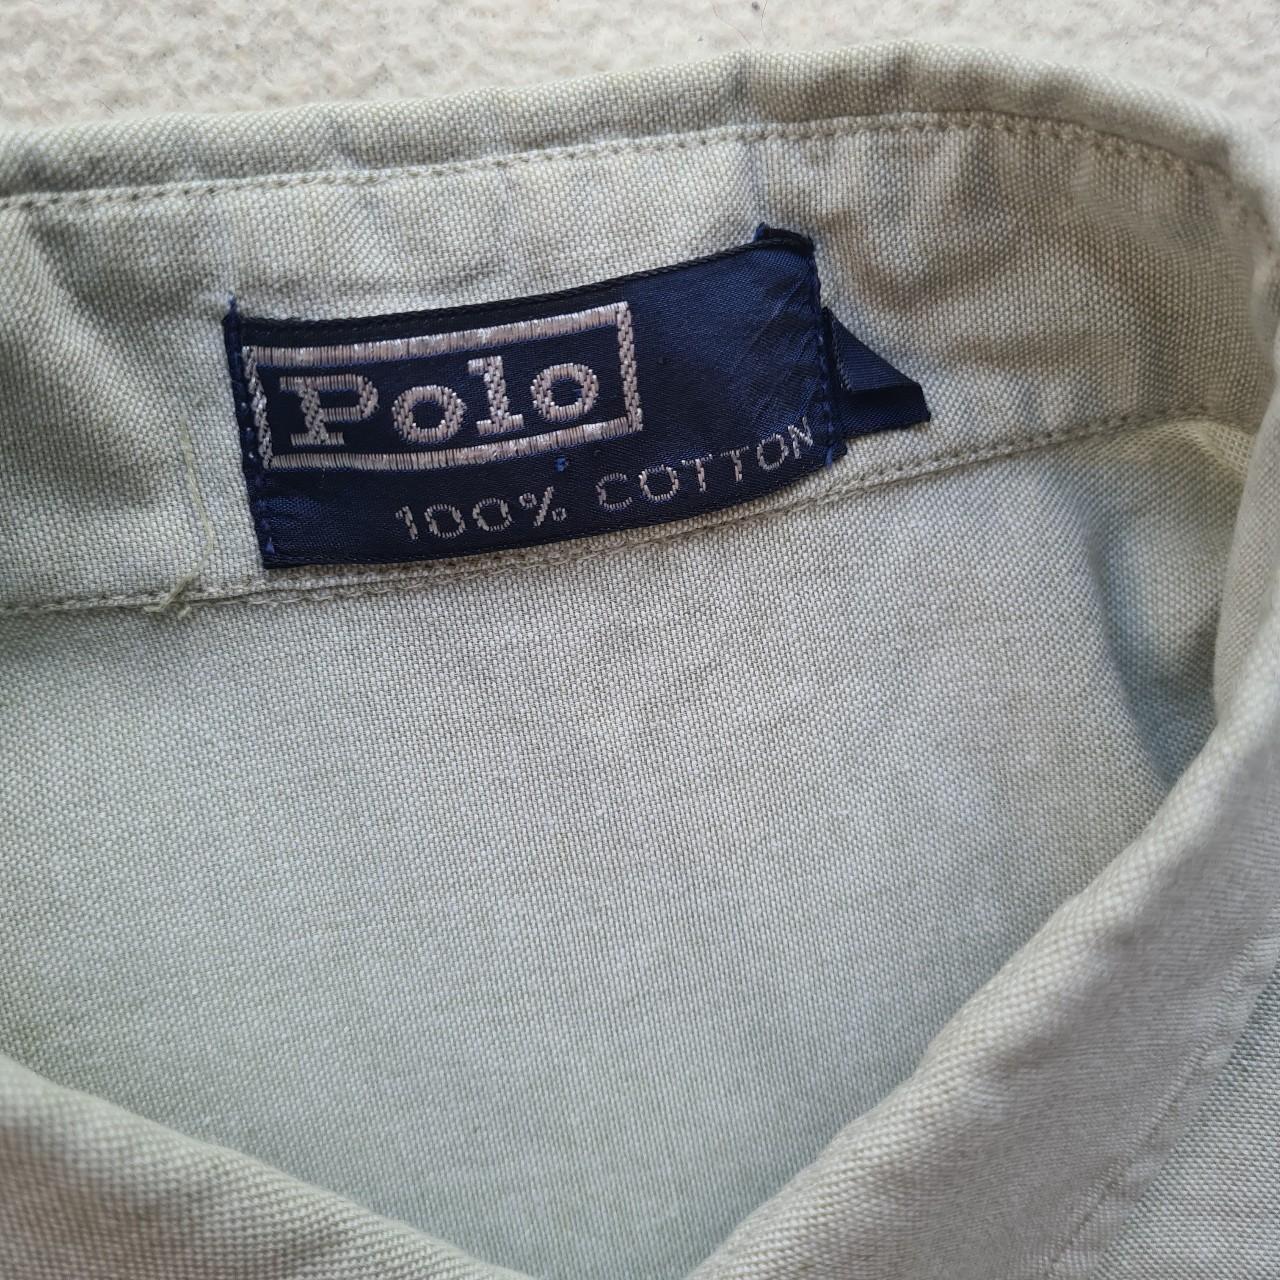 Men's Polo Ralph Lauren Long Sleeve Shirt Grey... - Depop